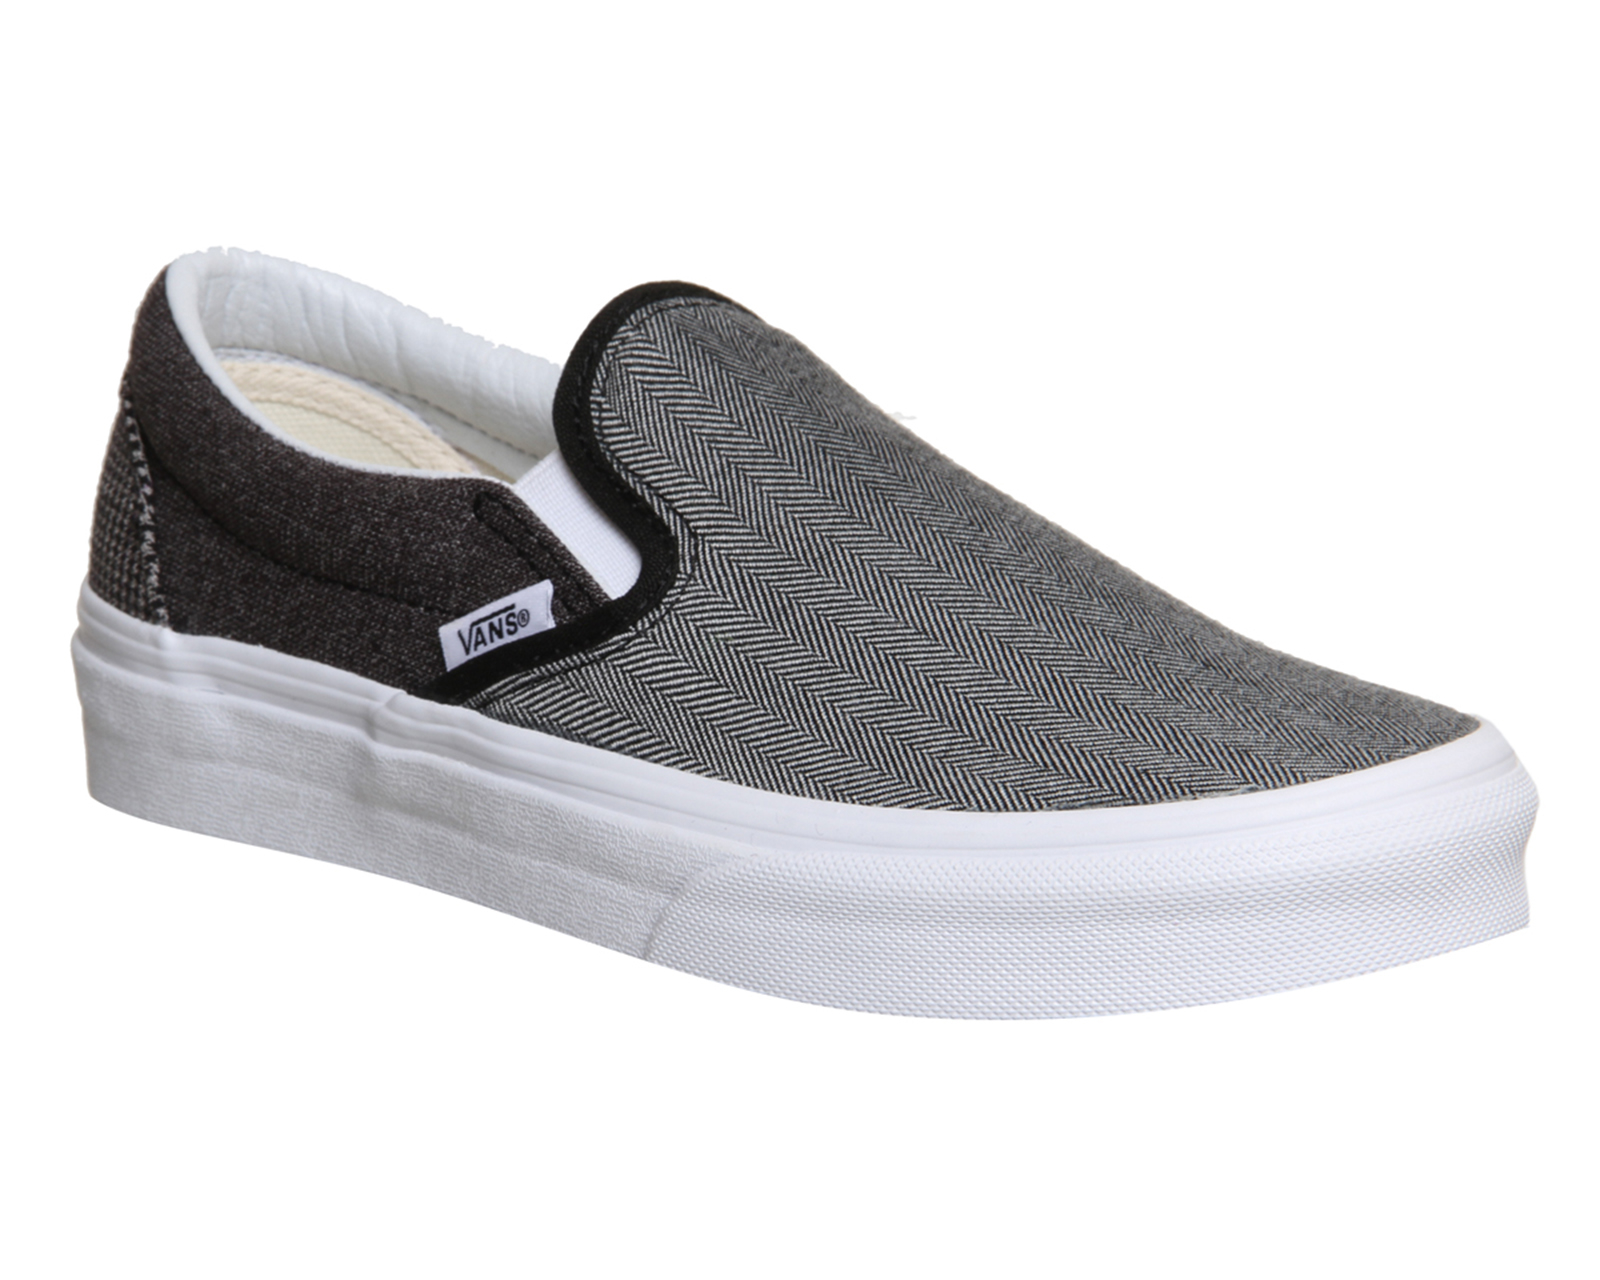 Lyst - Vans Classic Slip On Shoes for Men